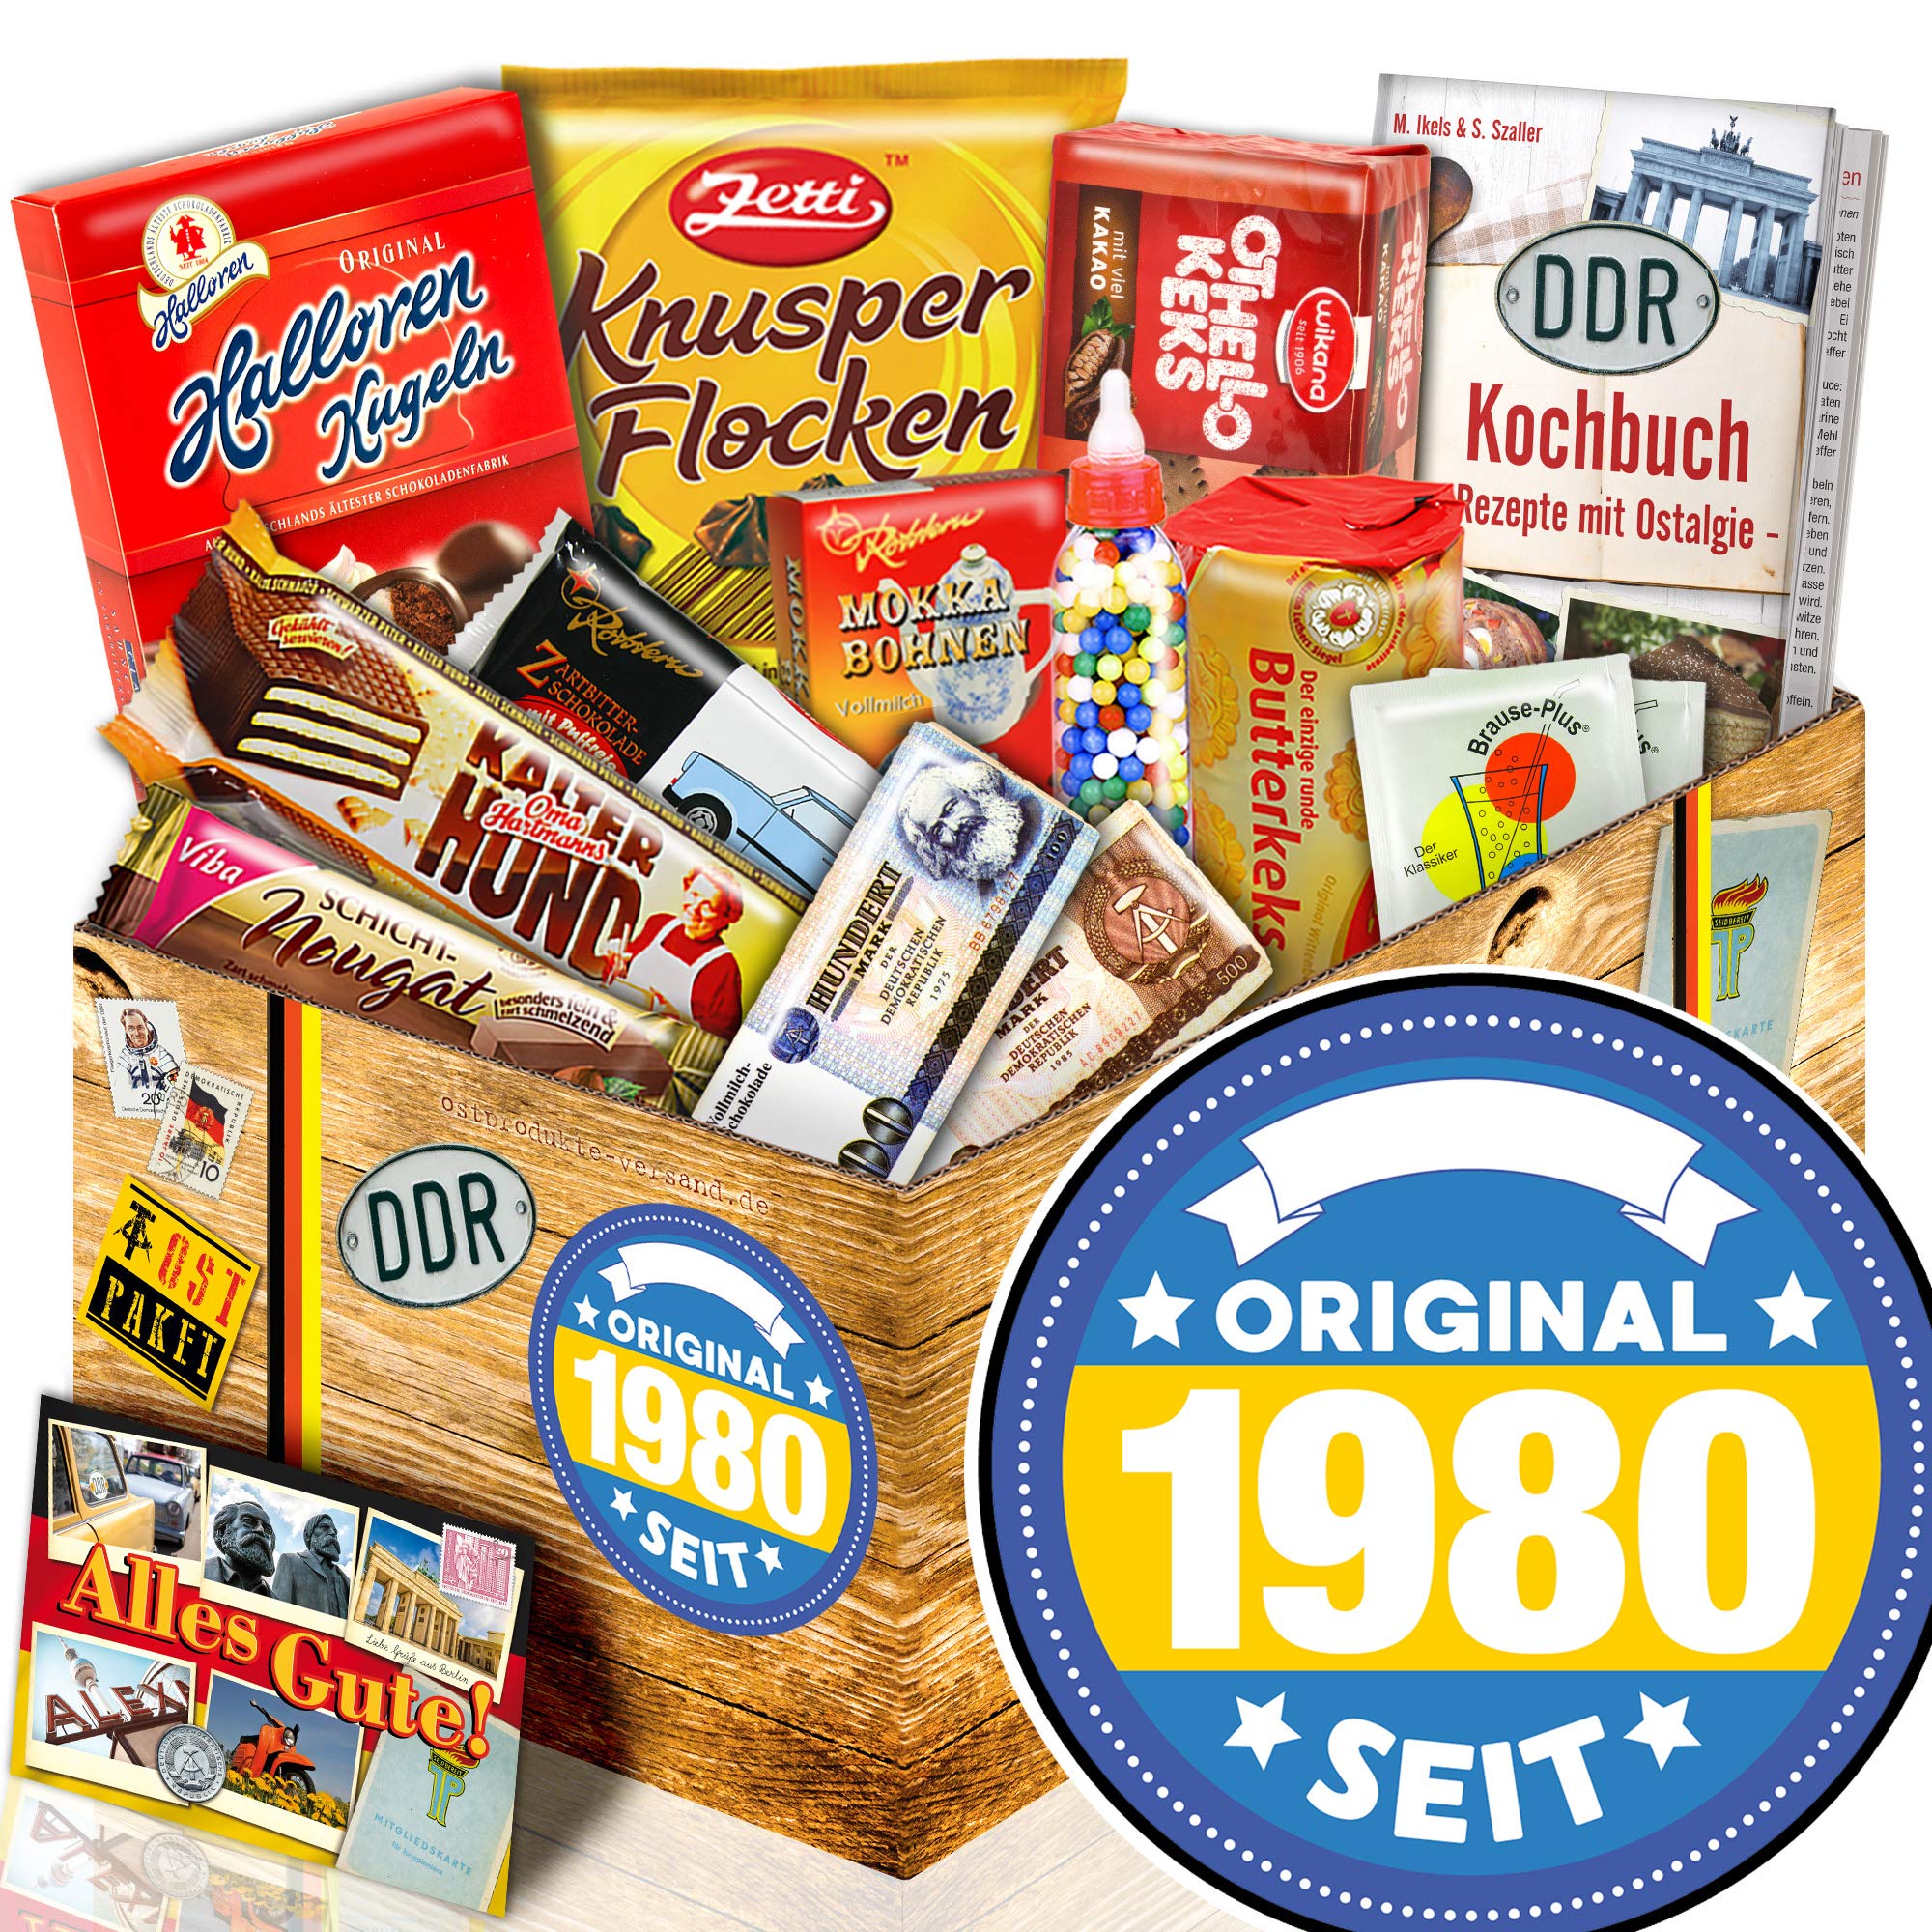 ostprodukte-versand Original seit 1980 - Süßigkeitenbox mit DDR Waren - 1980 Geschenk Geburtstag